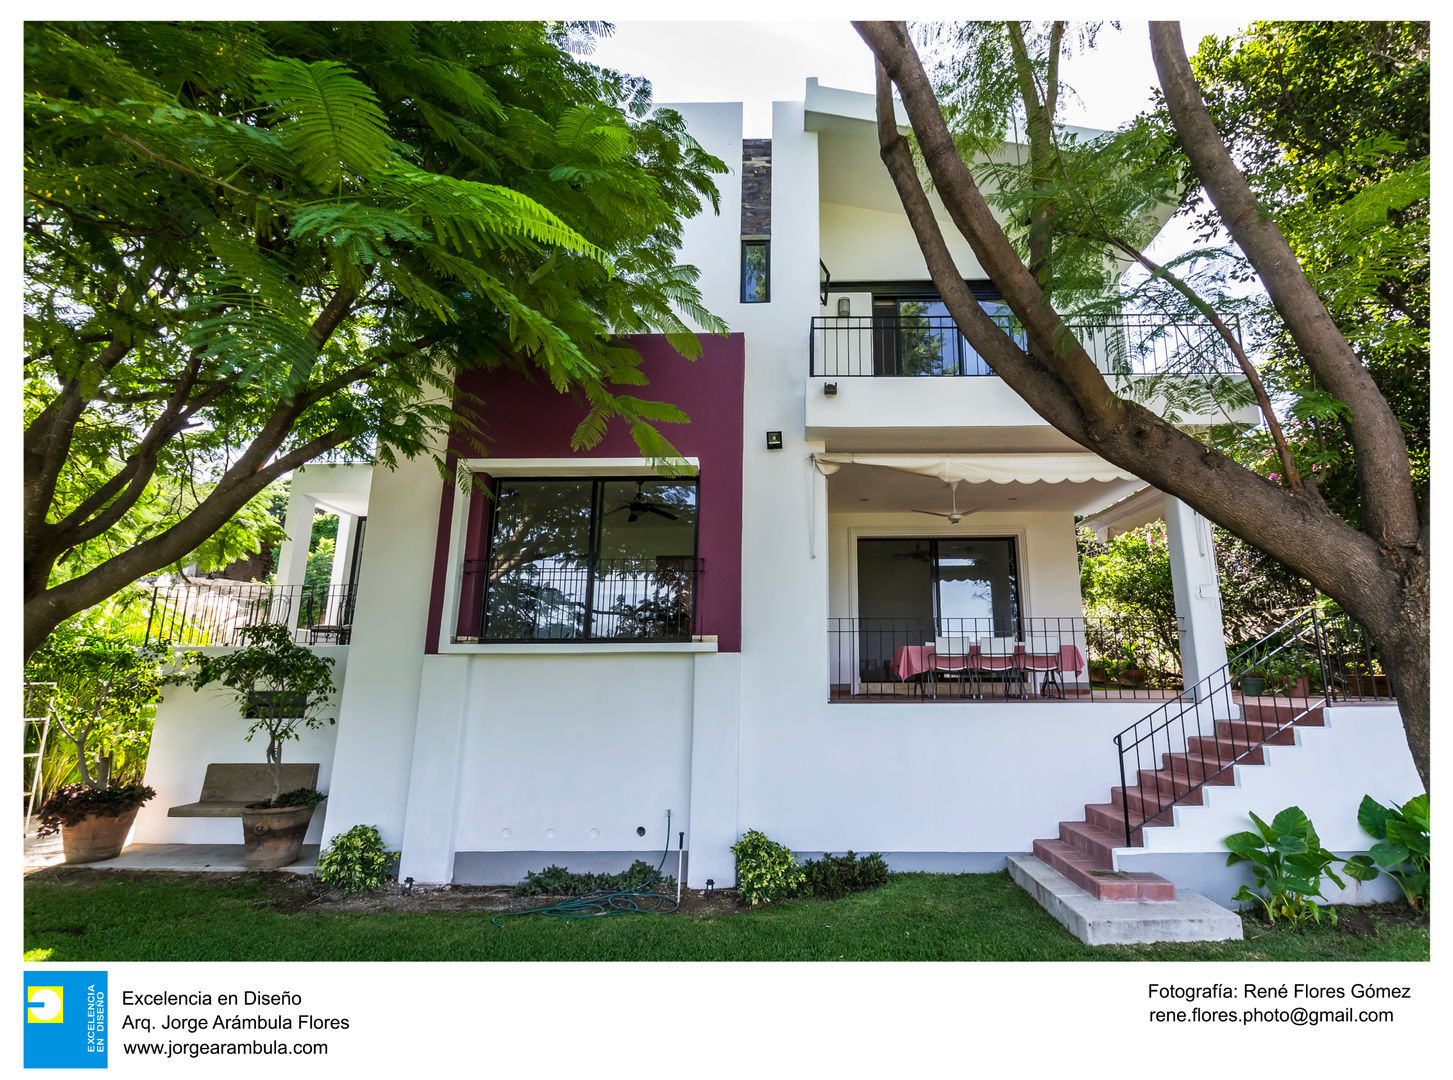 Casa Bosques, Excelencia en Diseño Excelencia en Diseño Single family home